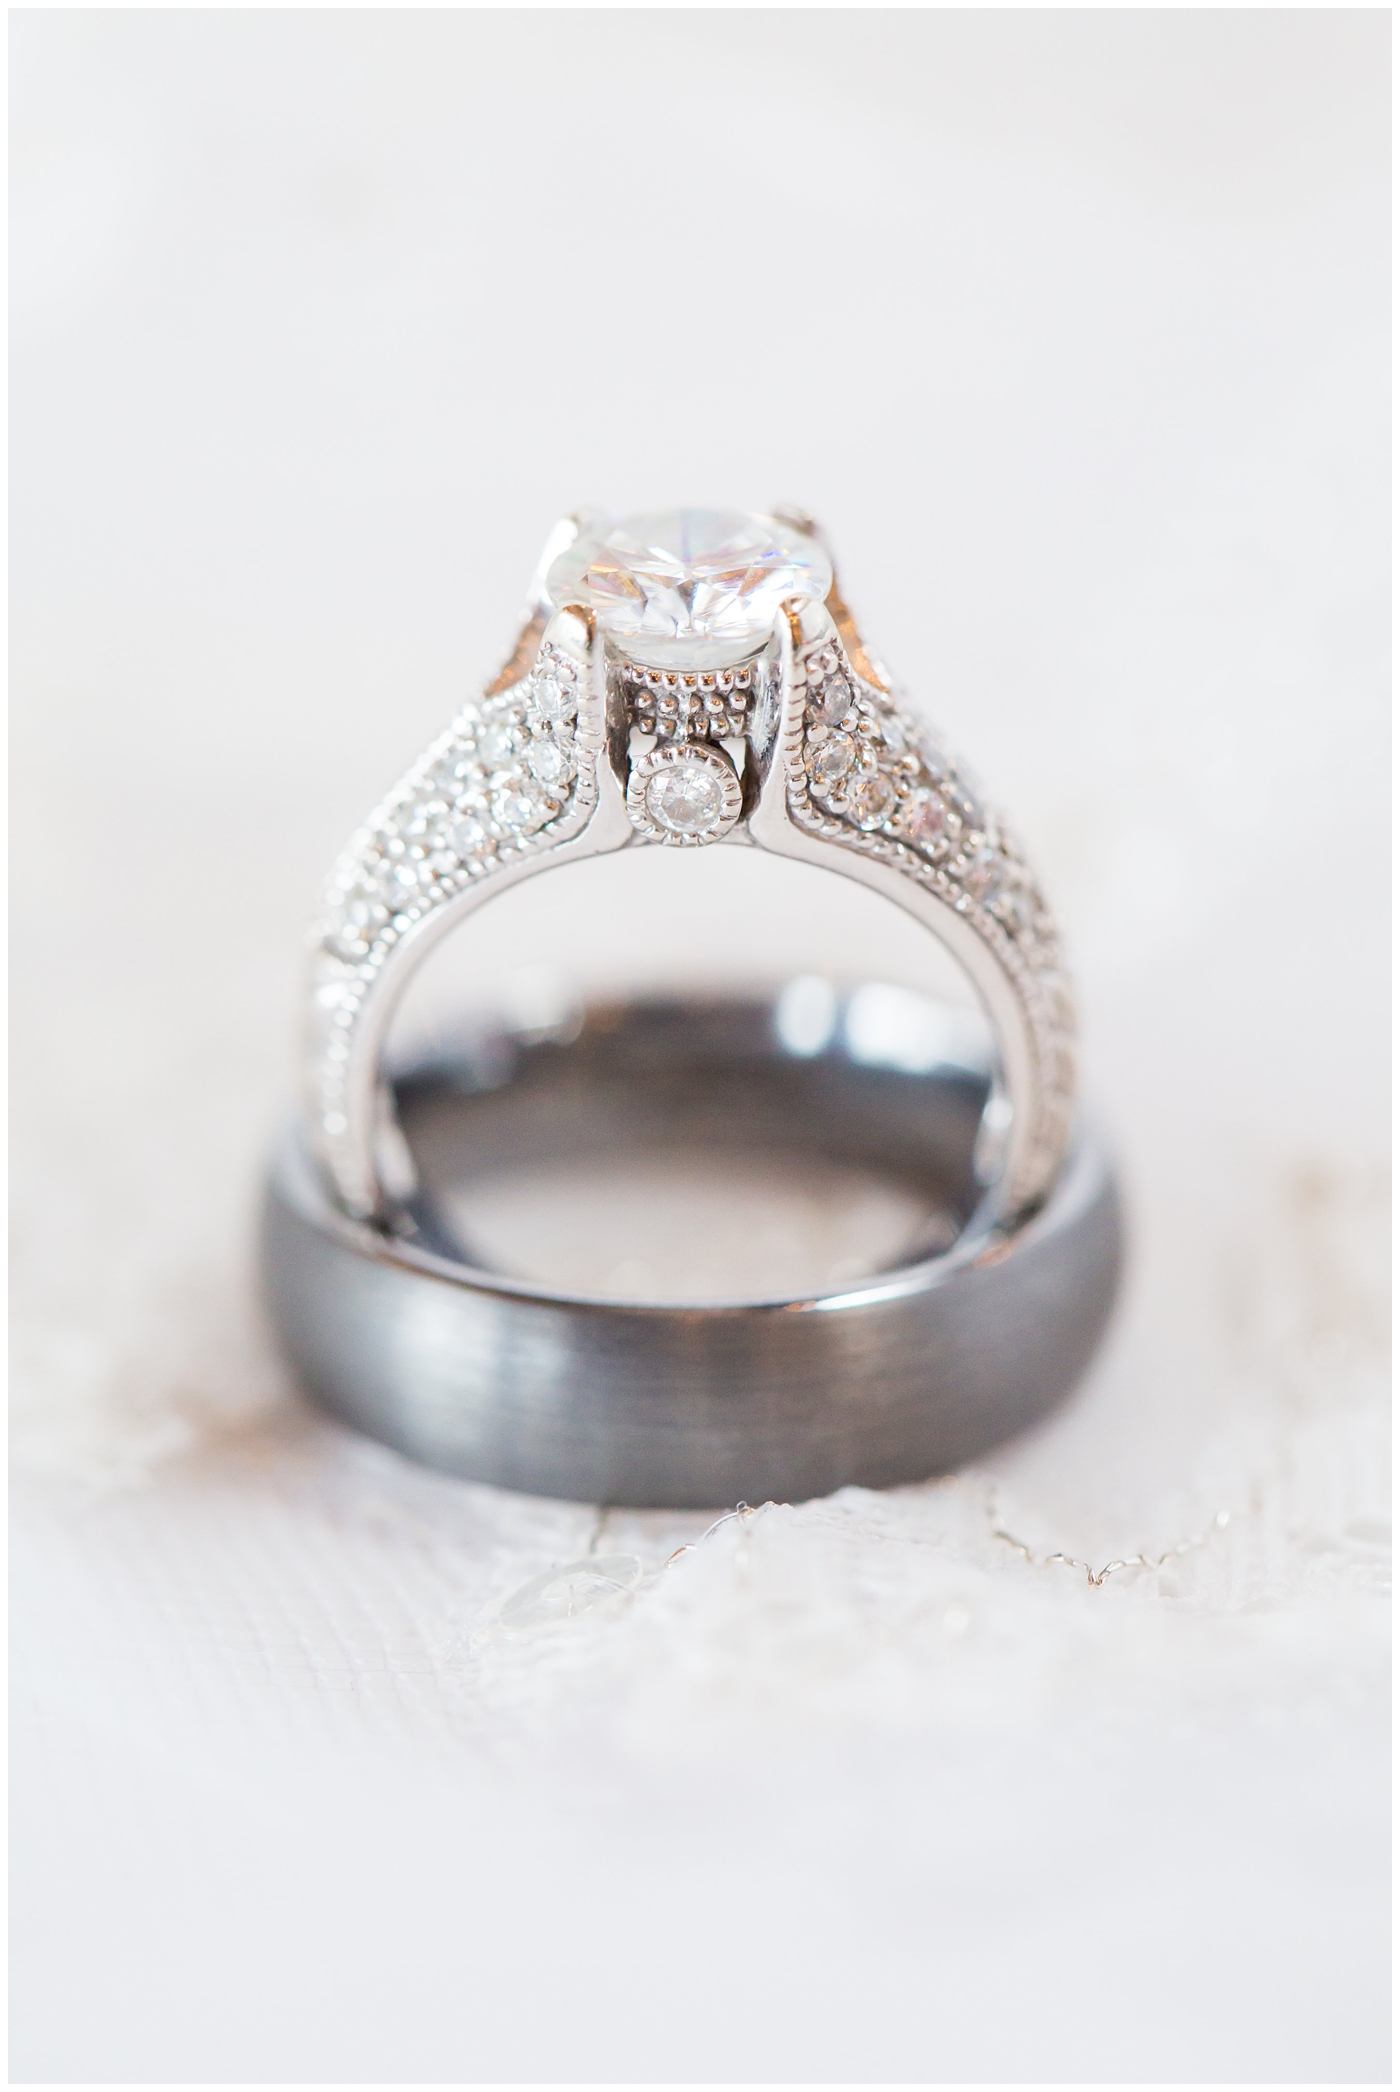 diamond wedding ring detail in white mrs box